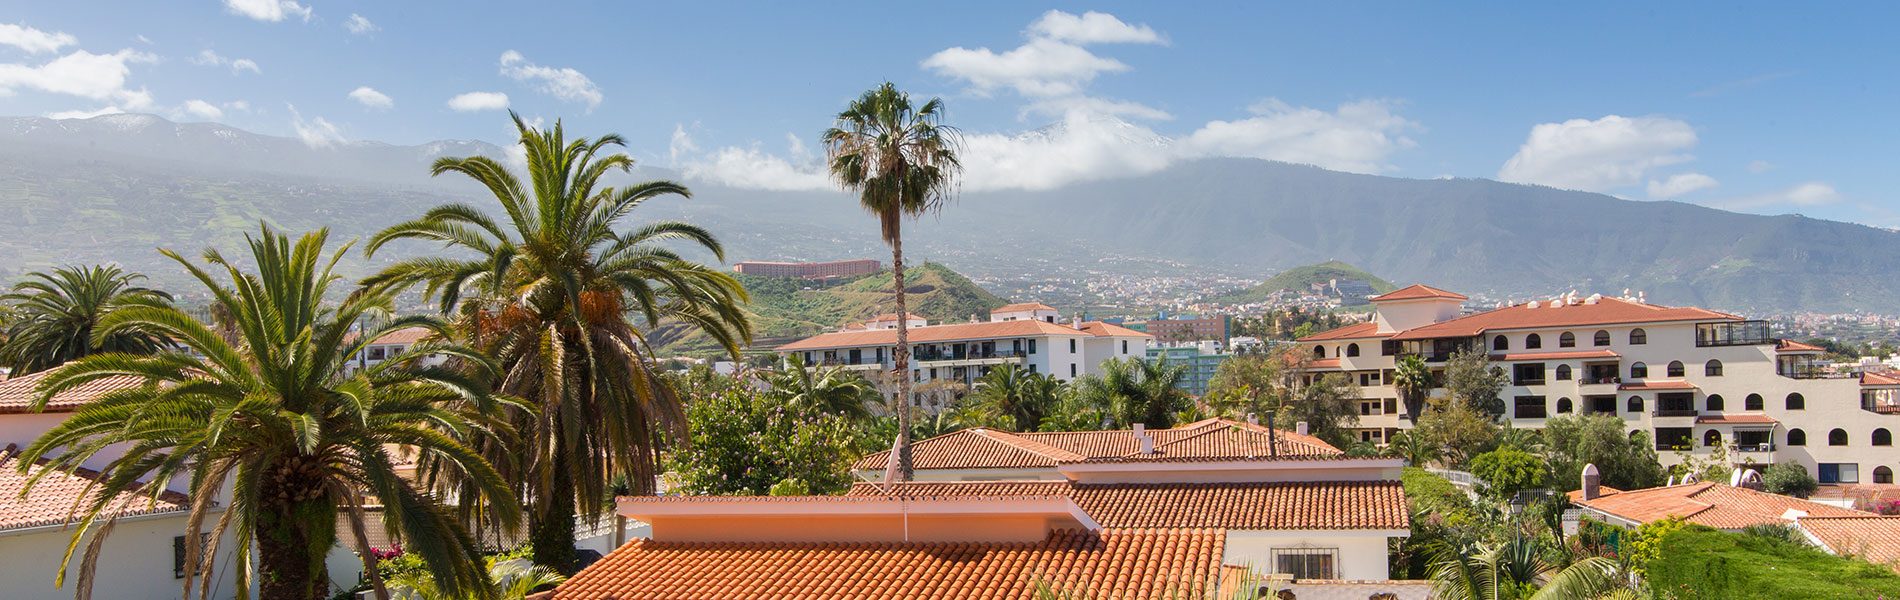 La Carabela Tenerife